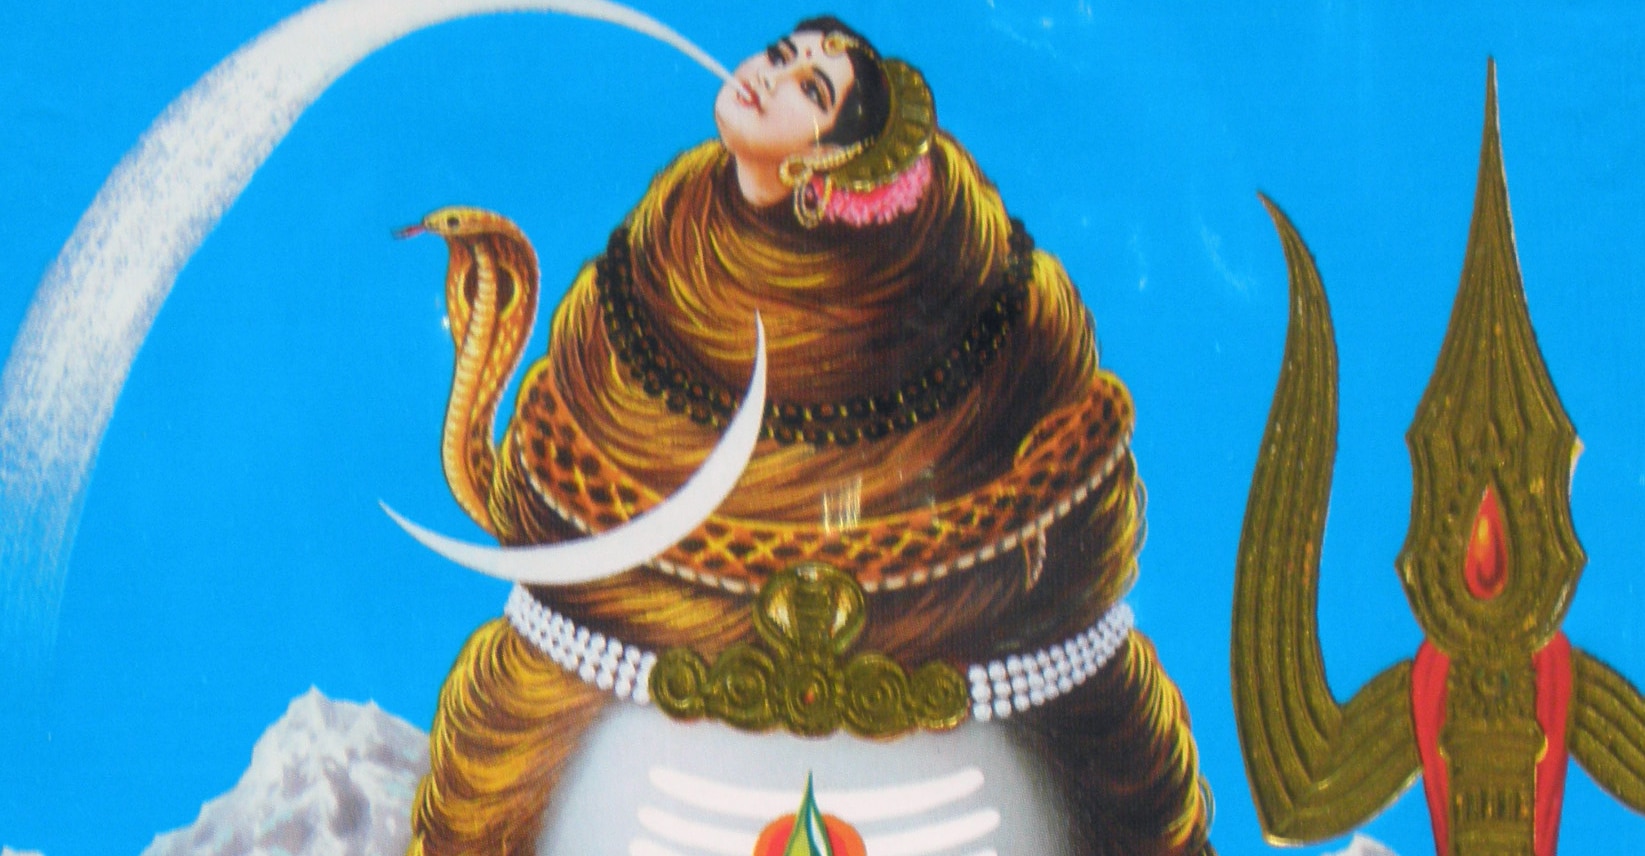 Shivanın kafasında hilal